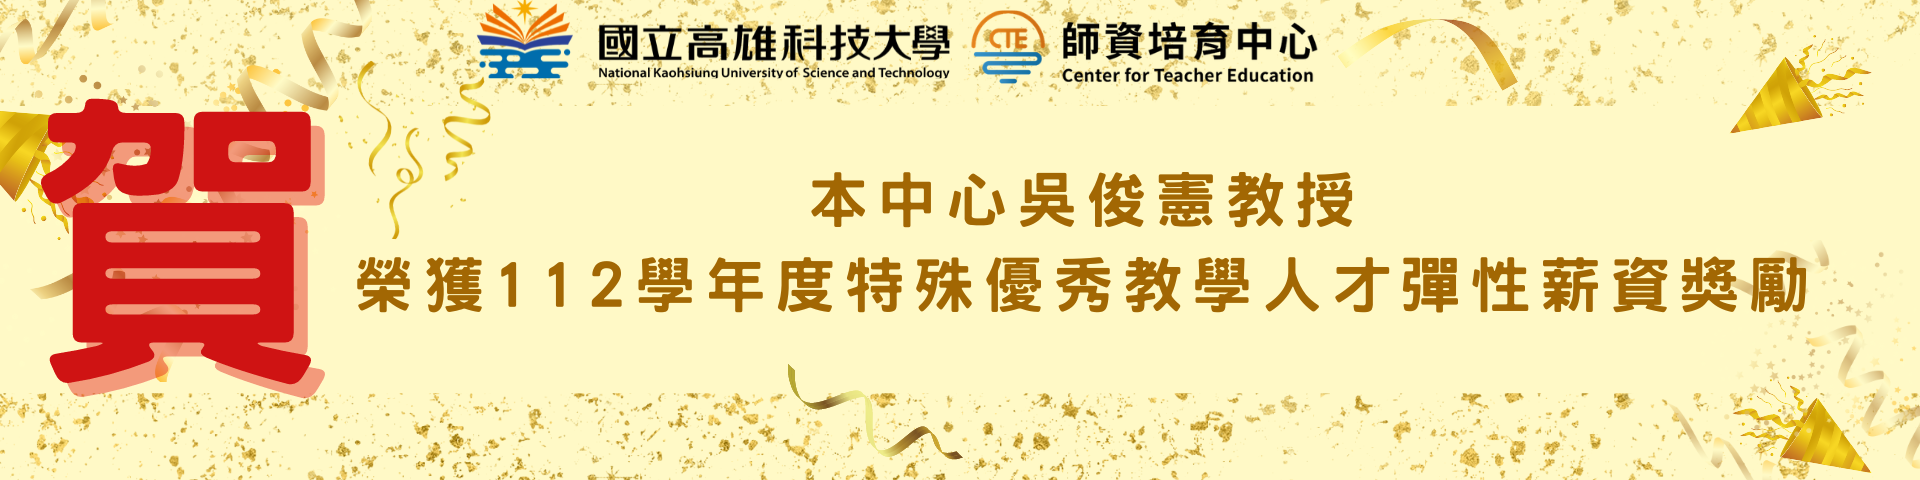 本中心吳俊憲教授榮獲112學年度特殊優秀教學人才彈性薪資獎勵